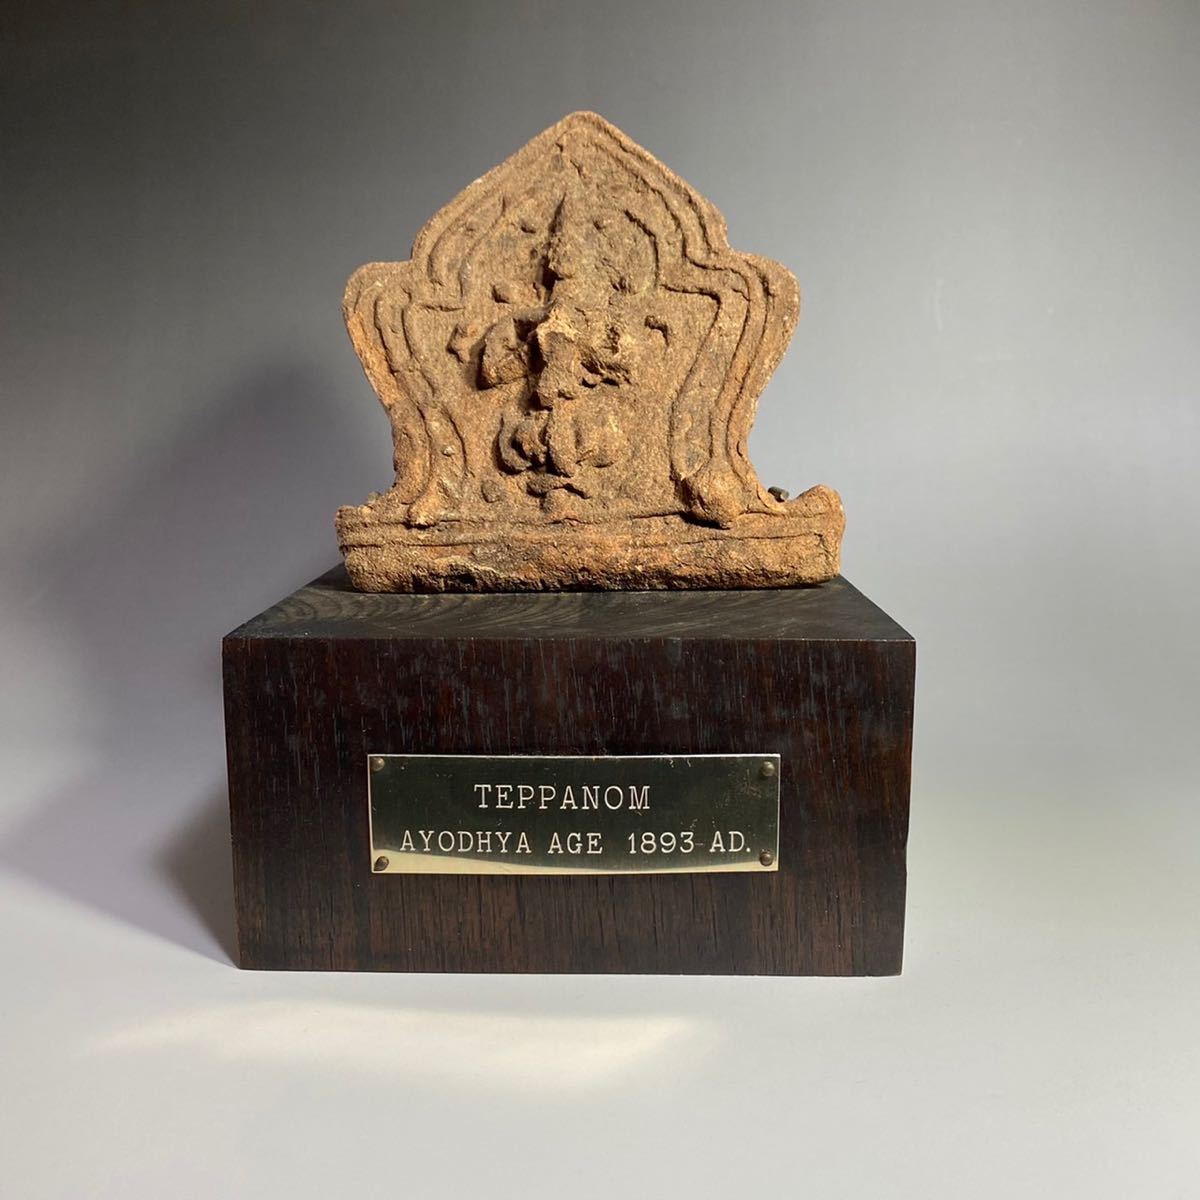 正規輸入元品 タイ アユタヤ王朝後期 金鍍金 青銅仏 17～18世紀 工芸品